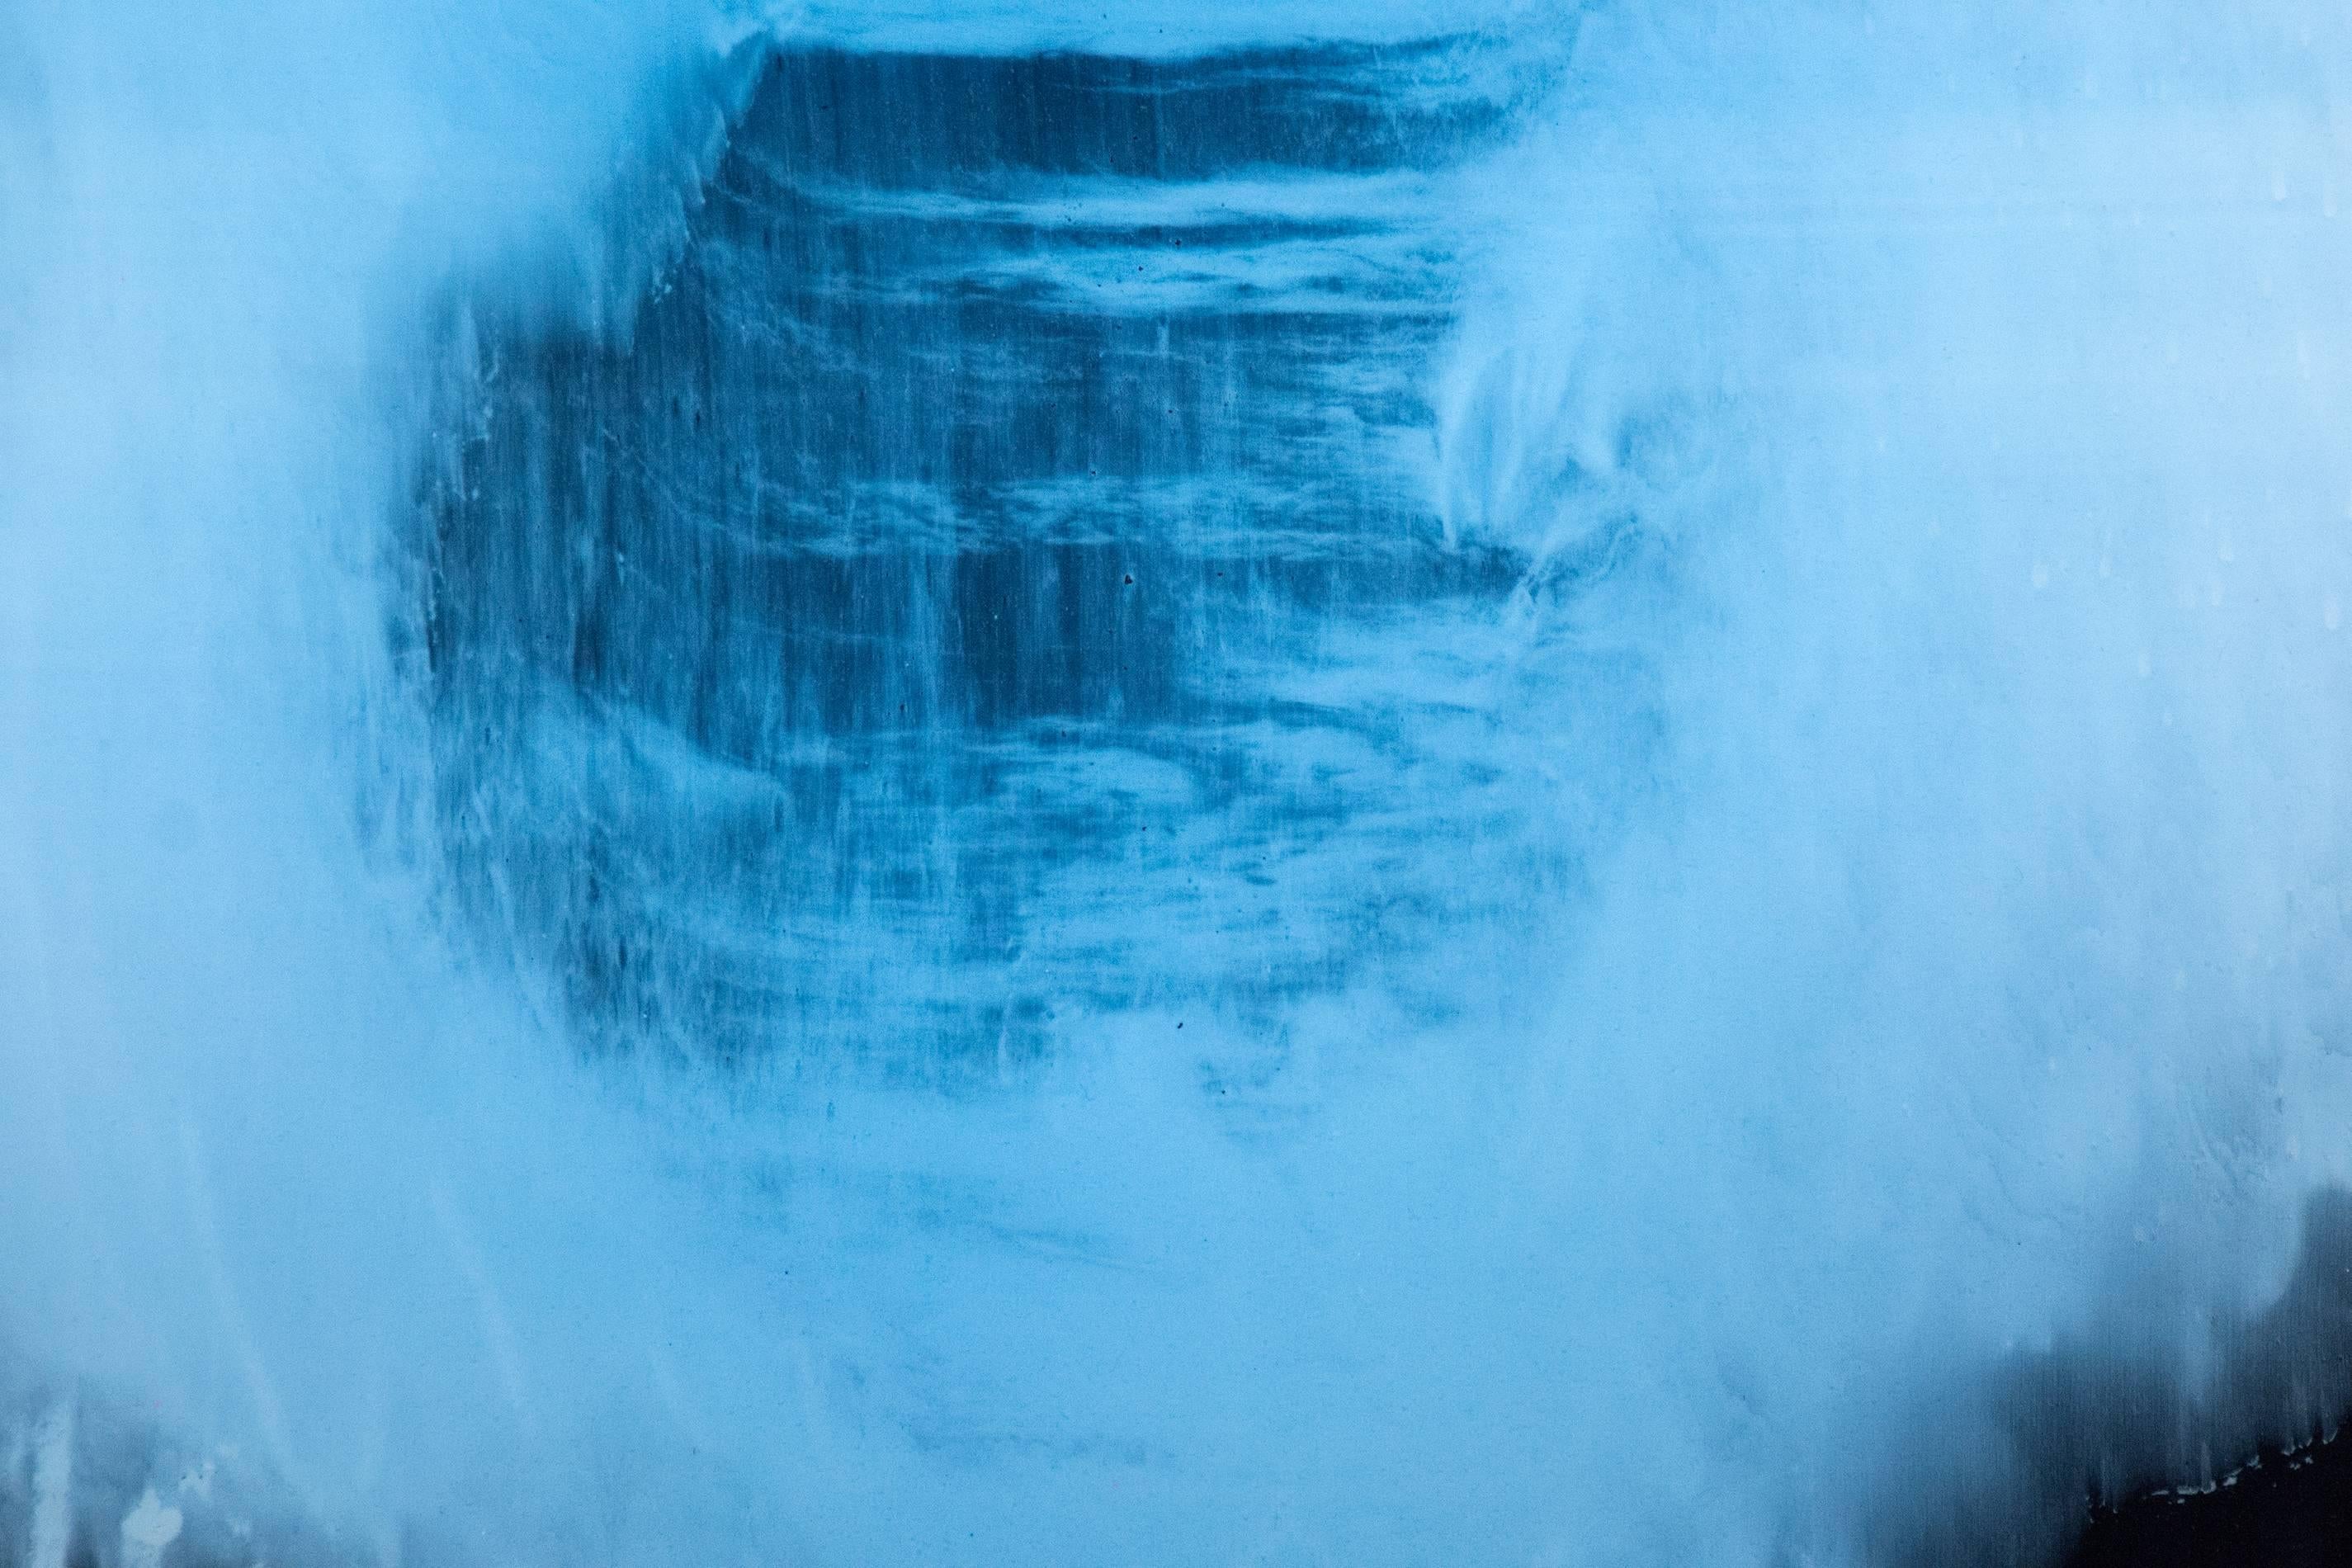 Un nuage bleu annelé flotte sur des couches chatoyantes de charbon de bois dans cette peinture abstraite élégante et émotive d'Alice Teichert. Un florilège d'écritures glyphiques soulignées par des bandes de rouge et de jaune bonbon complète la